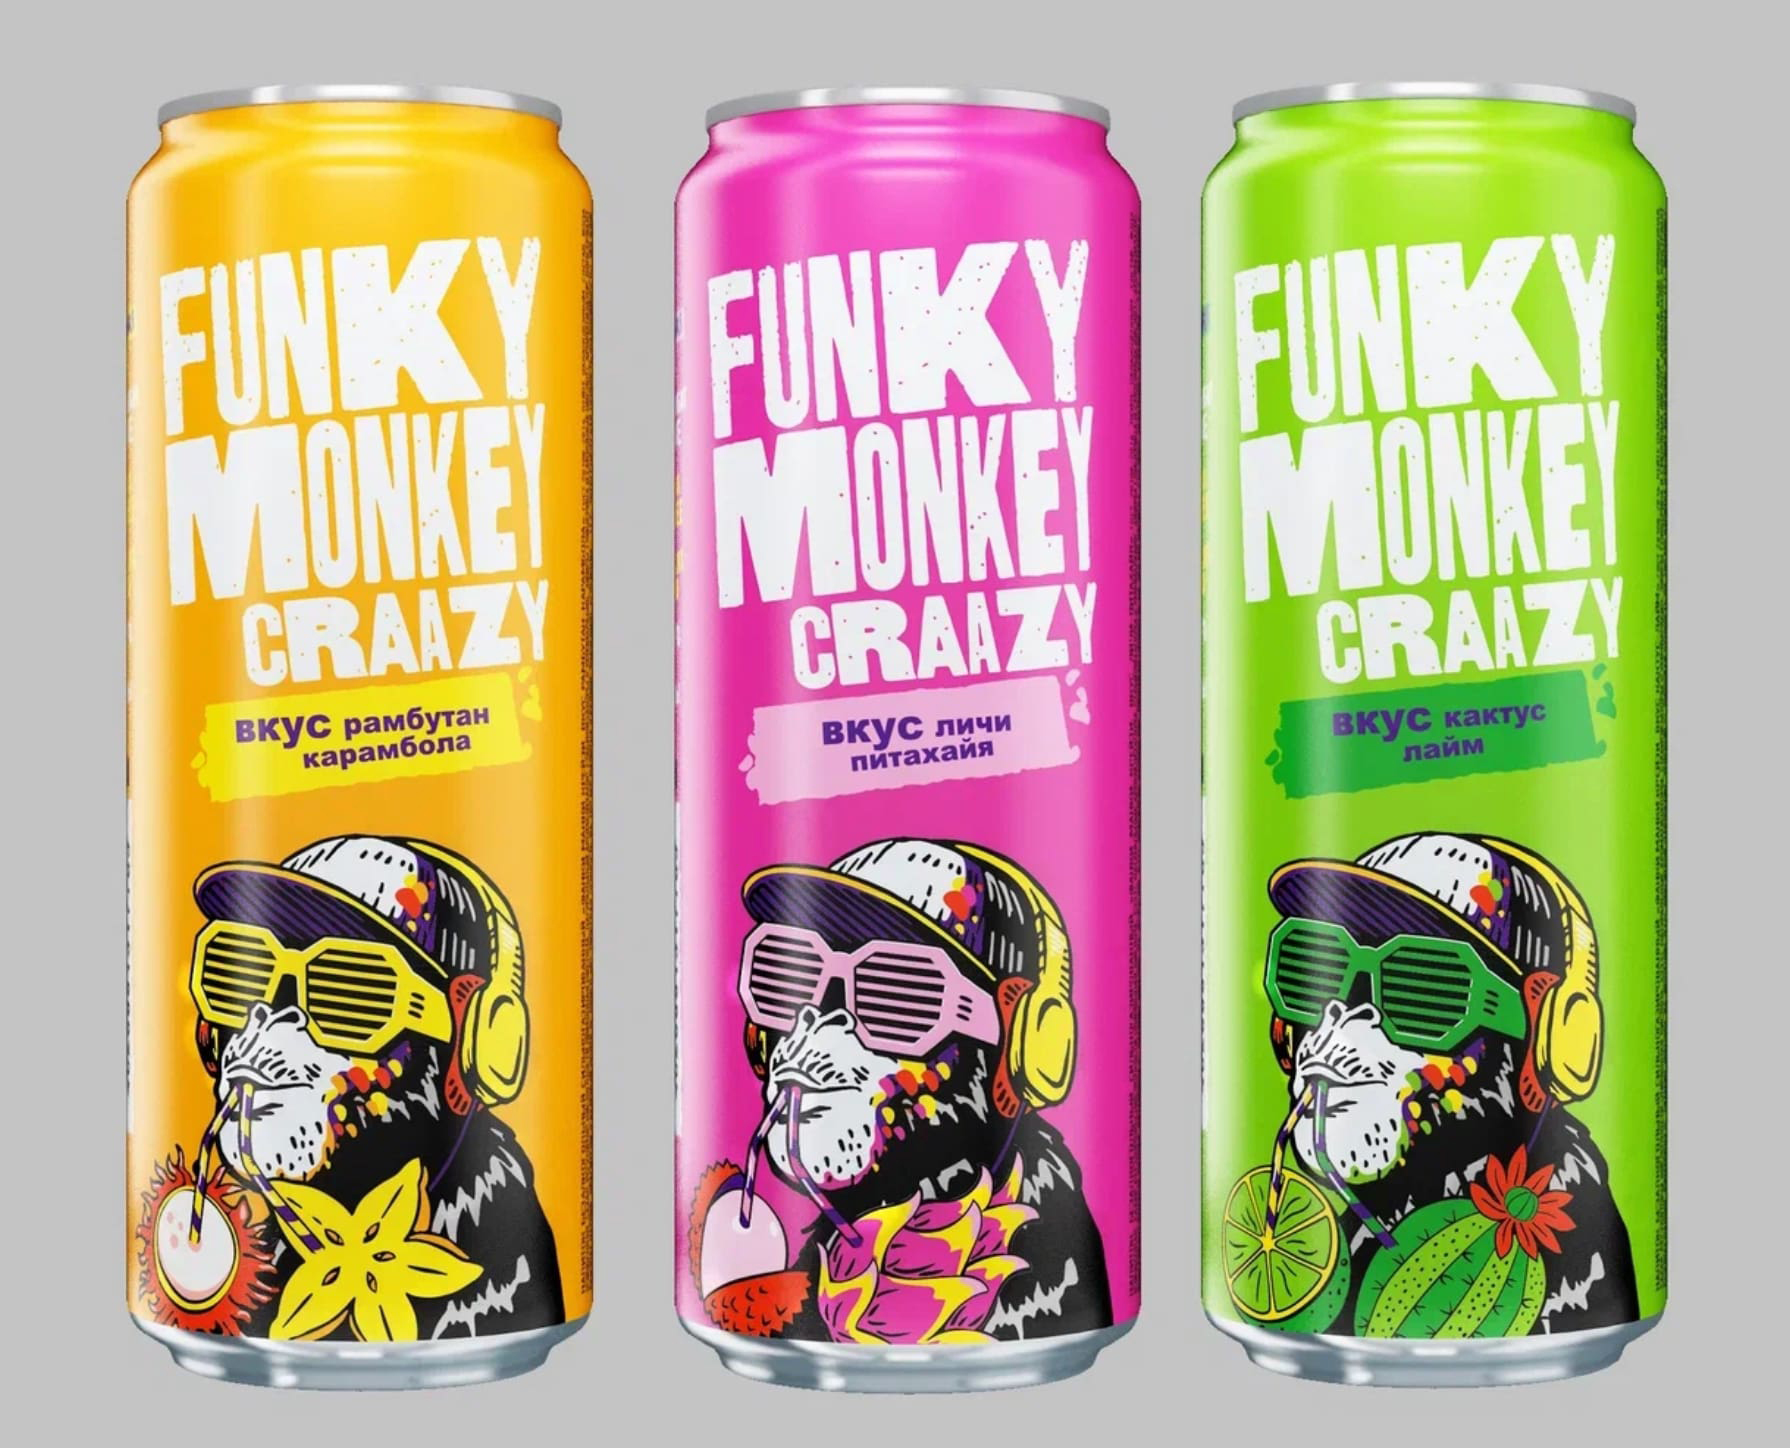 Funky Monkey запускает новую серию вкусов на рынке газированных напитков | Новости компании